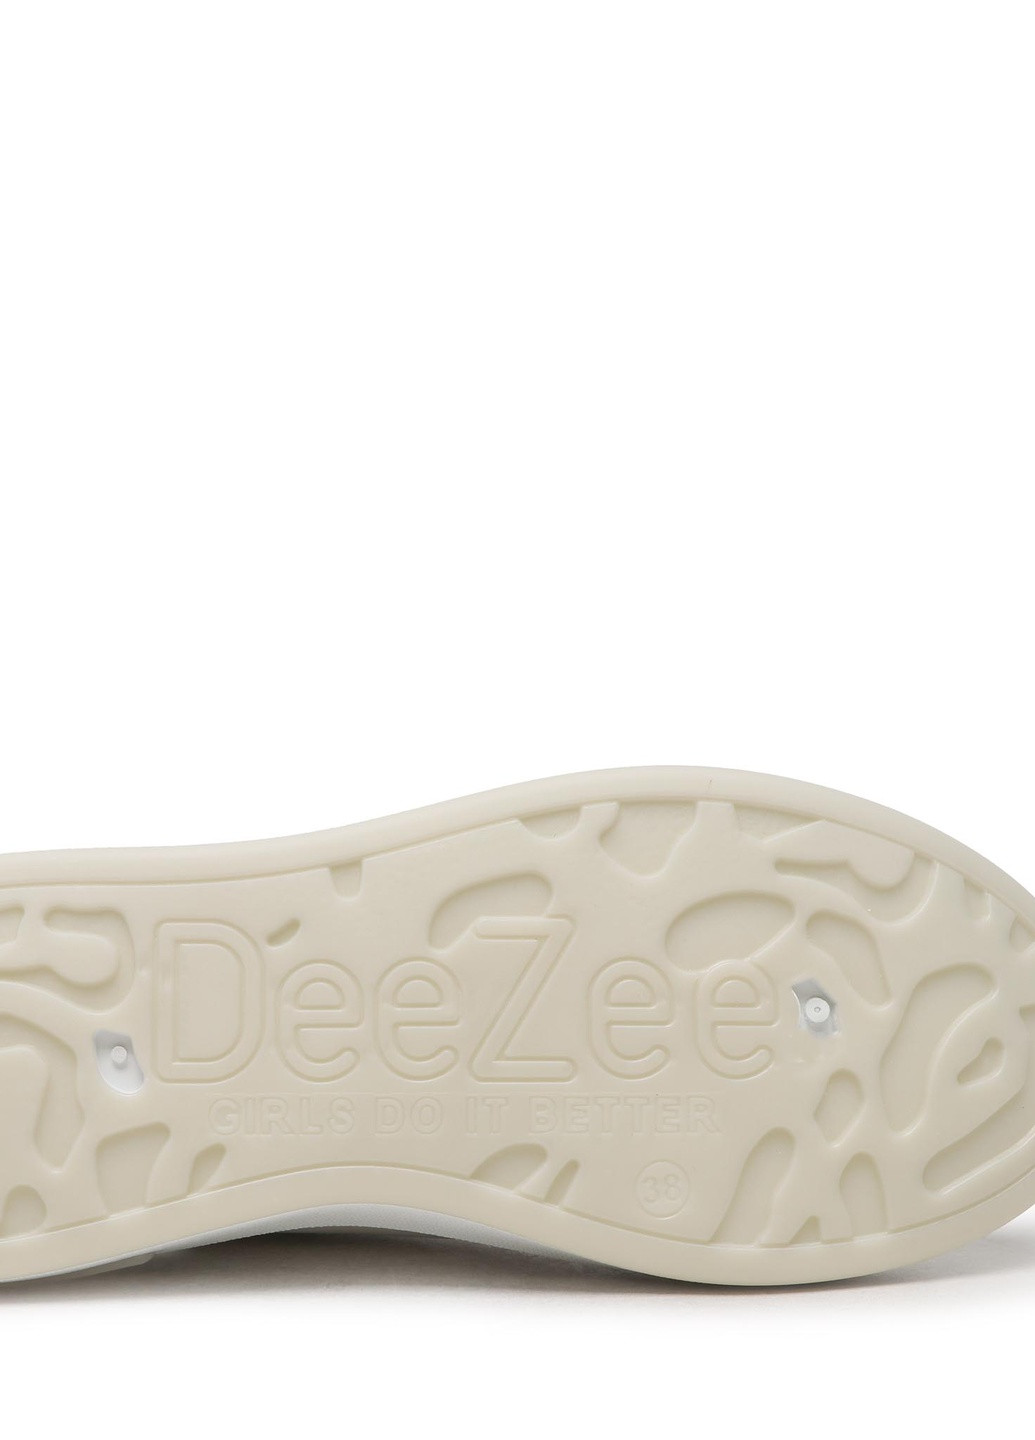 Белые осенние снікерcи ts5126-01 DeeZee